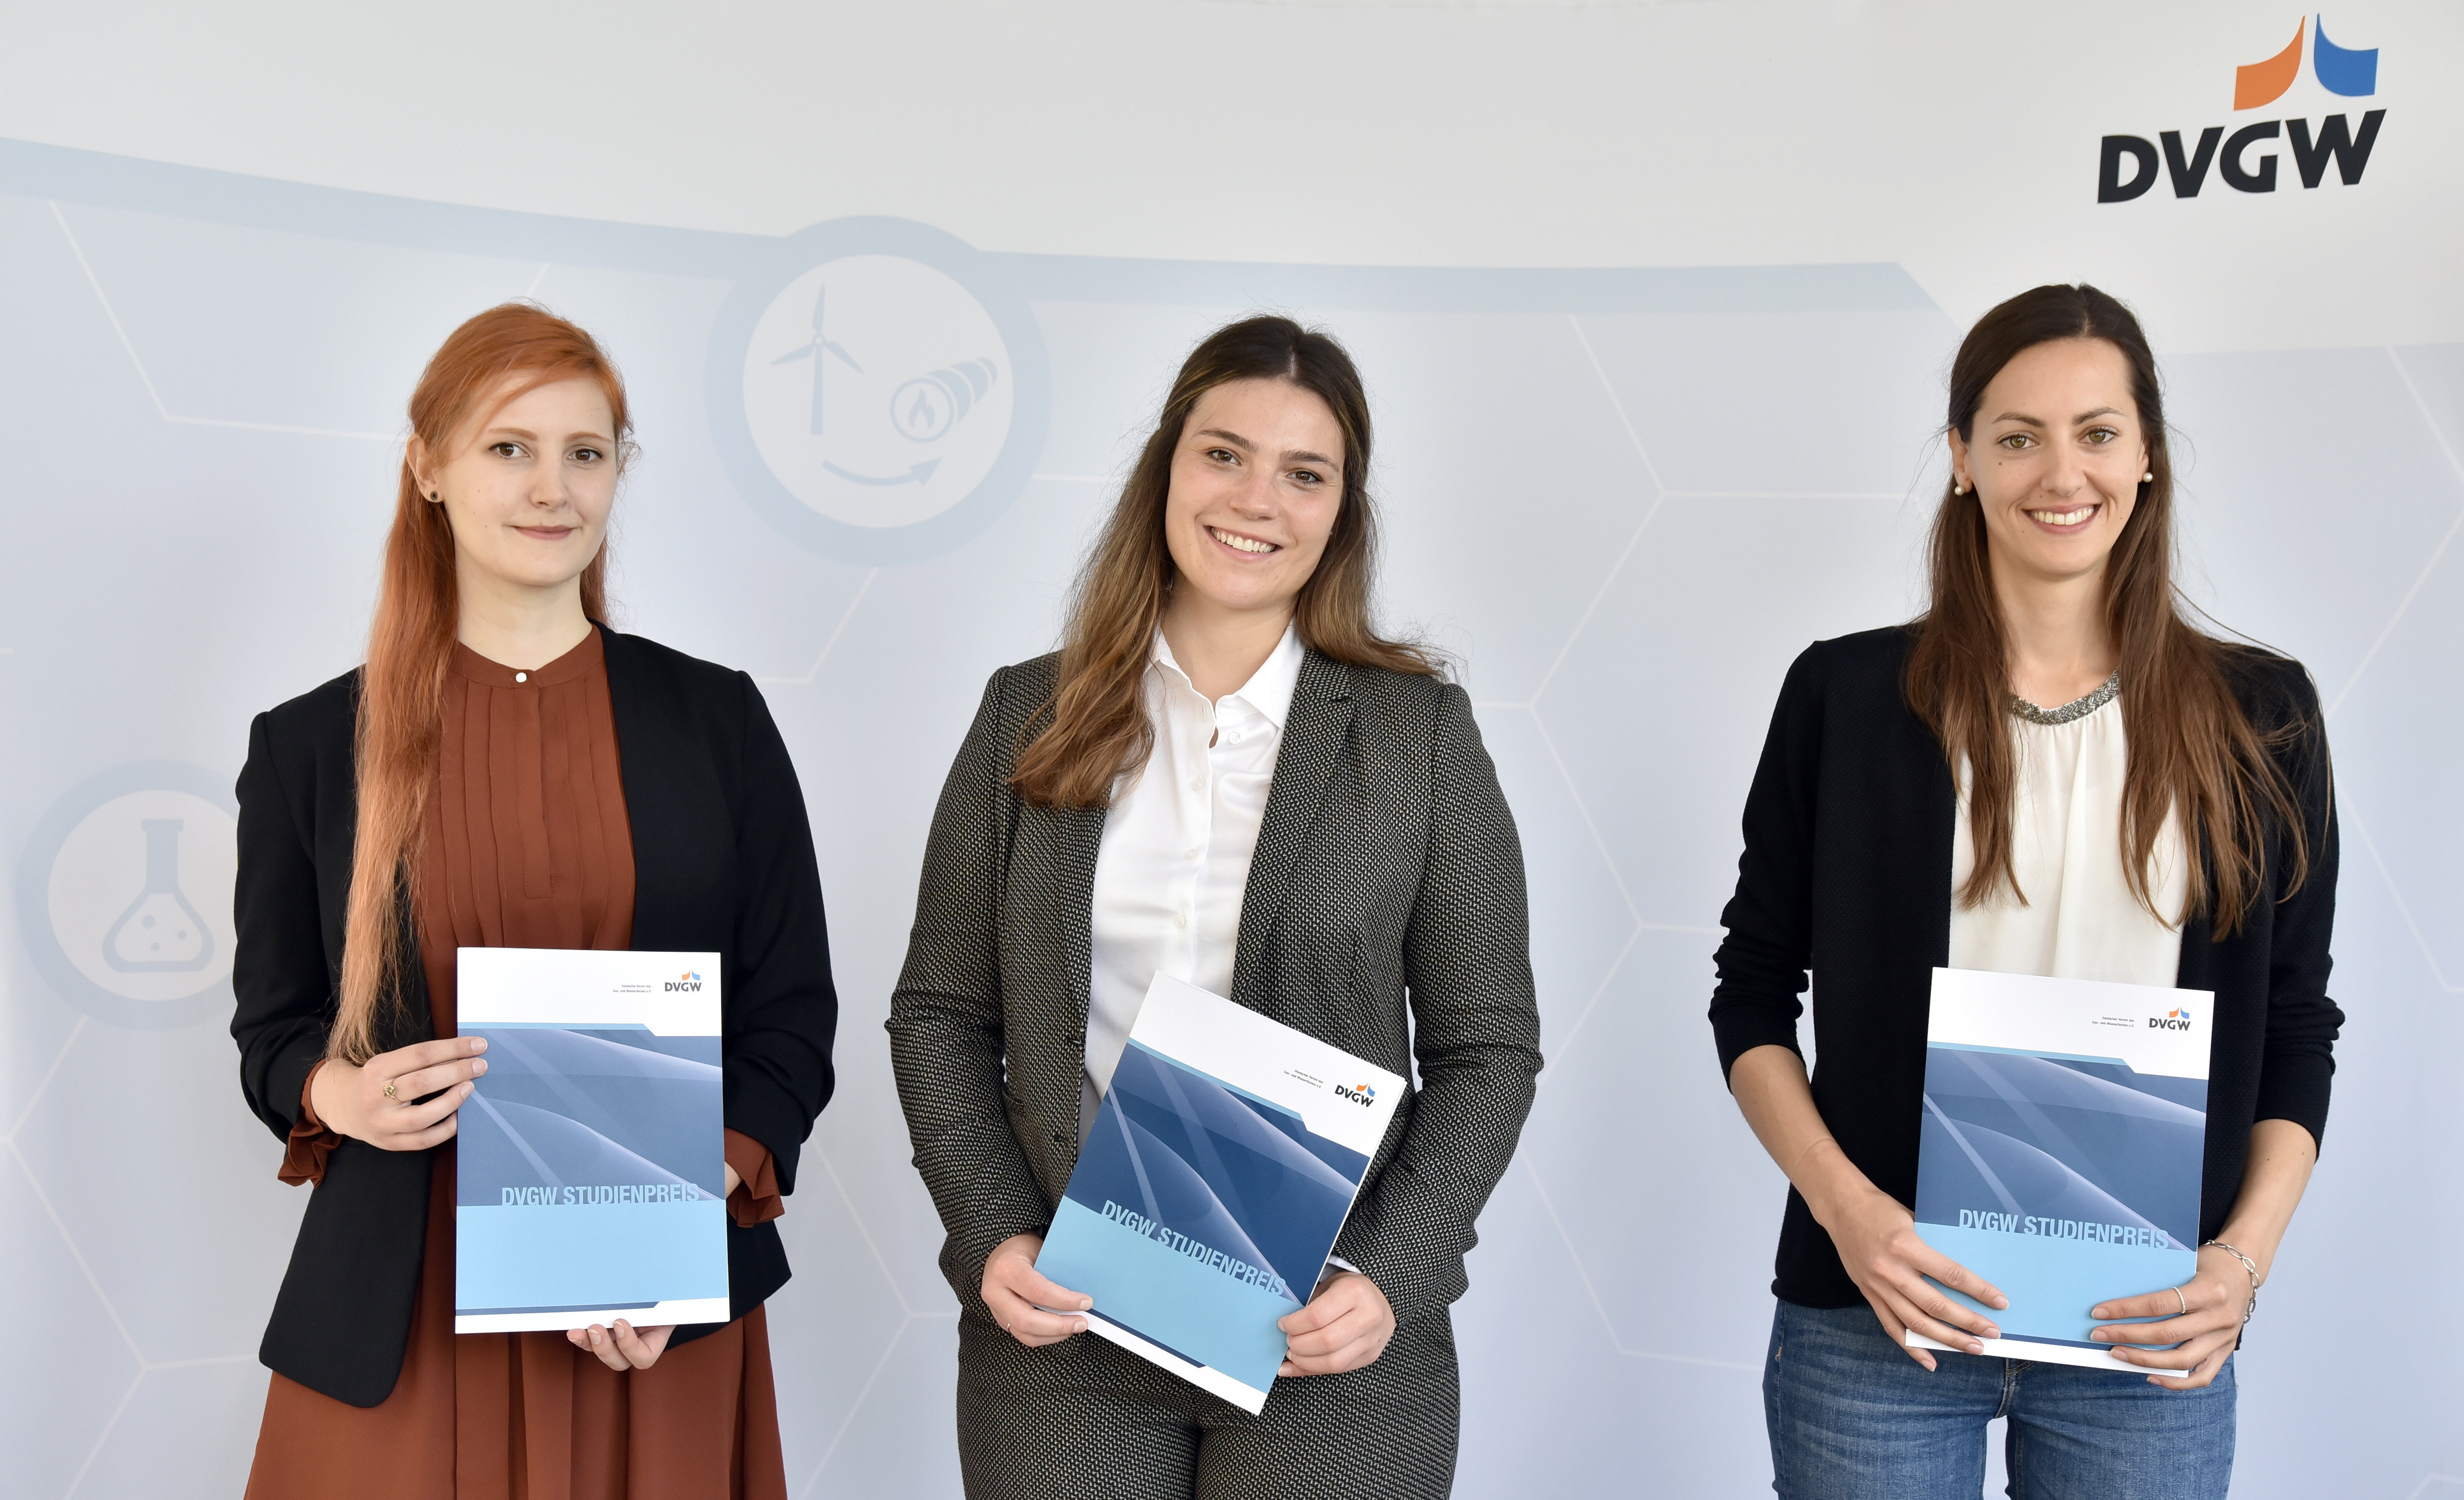 Preisträgerinnen DVGW-STudienpreis Gas 2020/2021 bei der Verleihung am 10.09.21 in der DVGW-Hauptgeschäftstelle in Bonn.